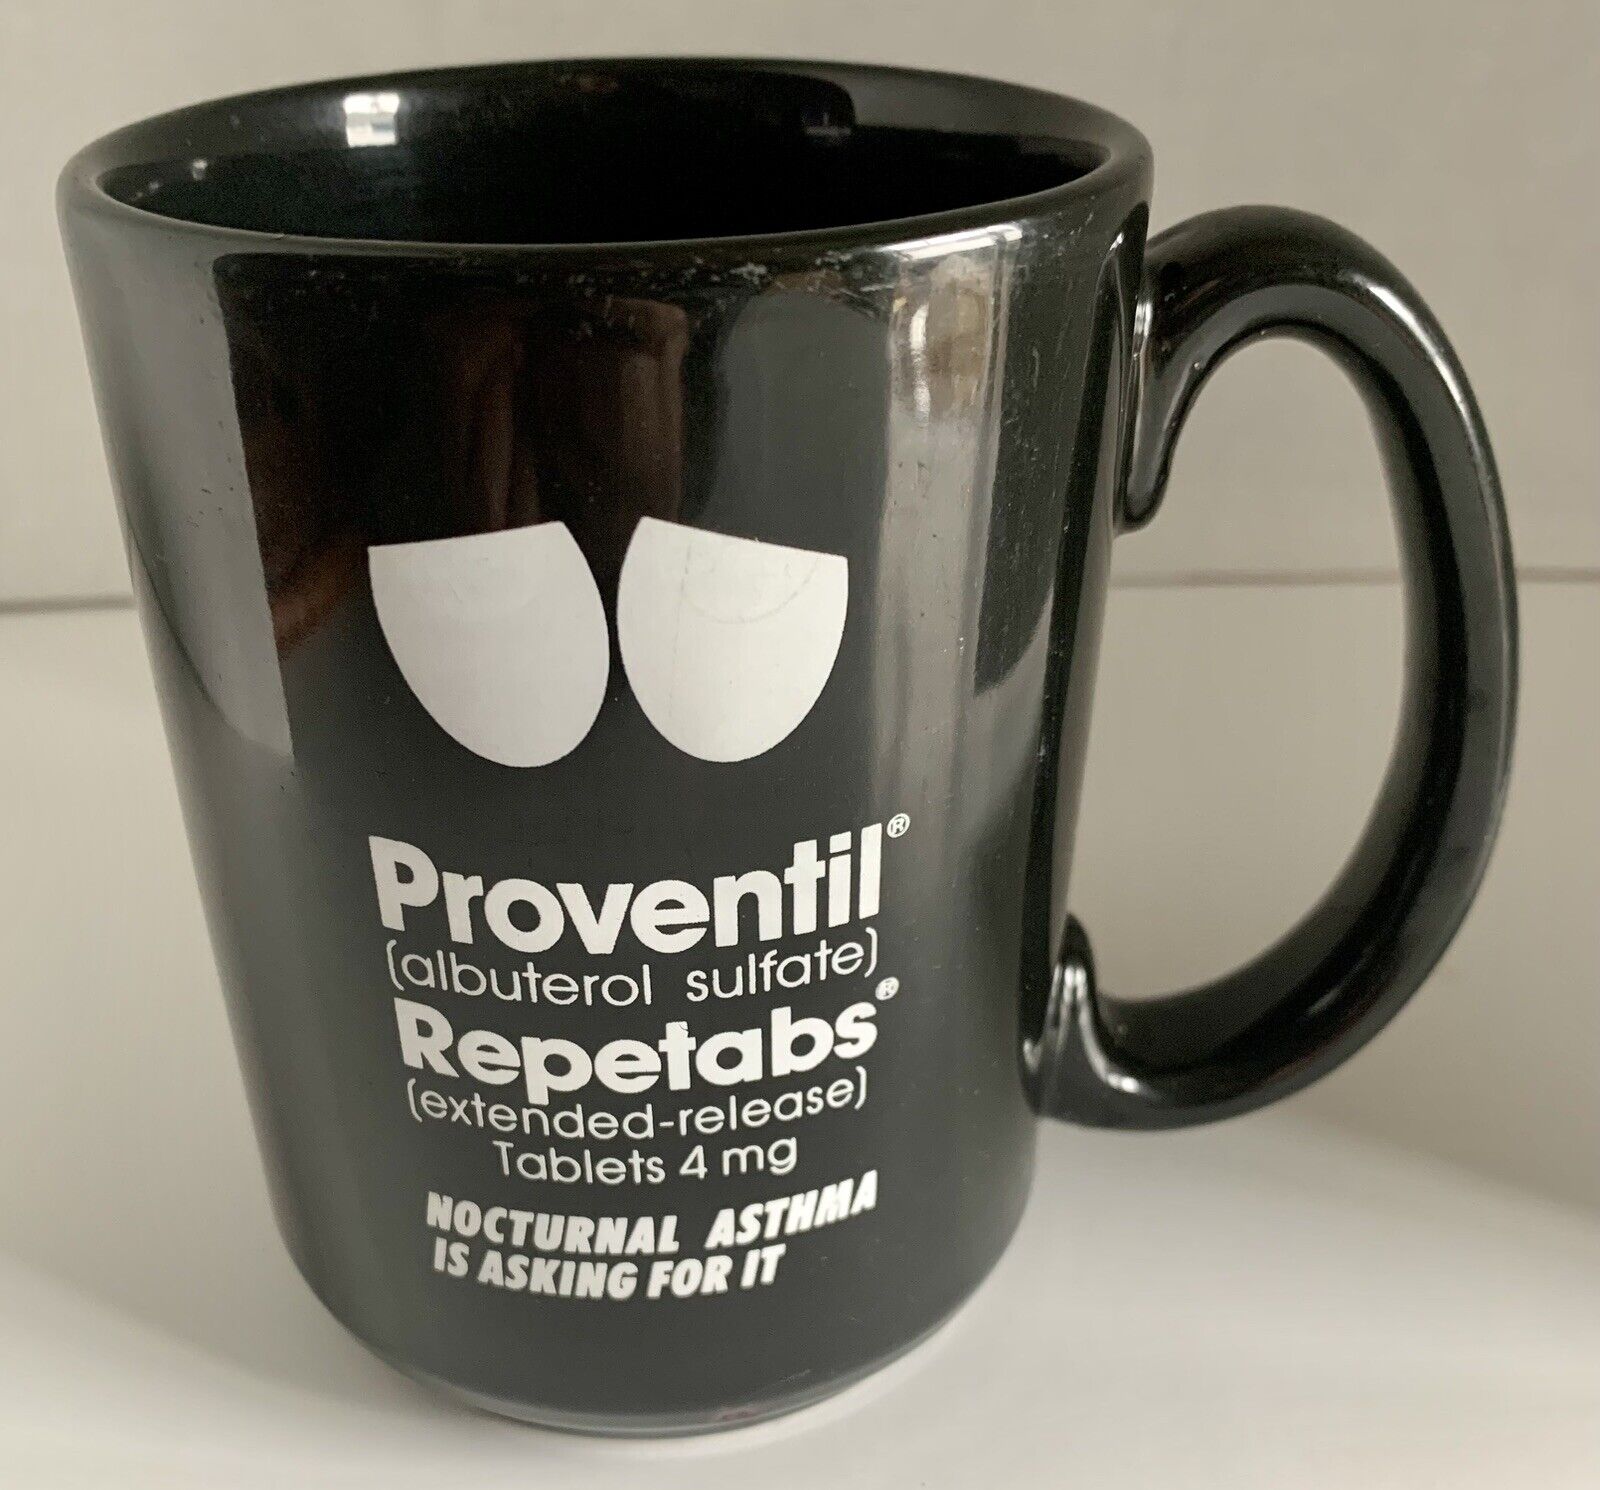 Vintage Proventil Pharma Drug Rep Advertising Coffee Cup Mug